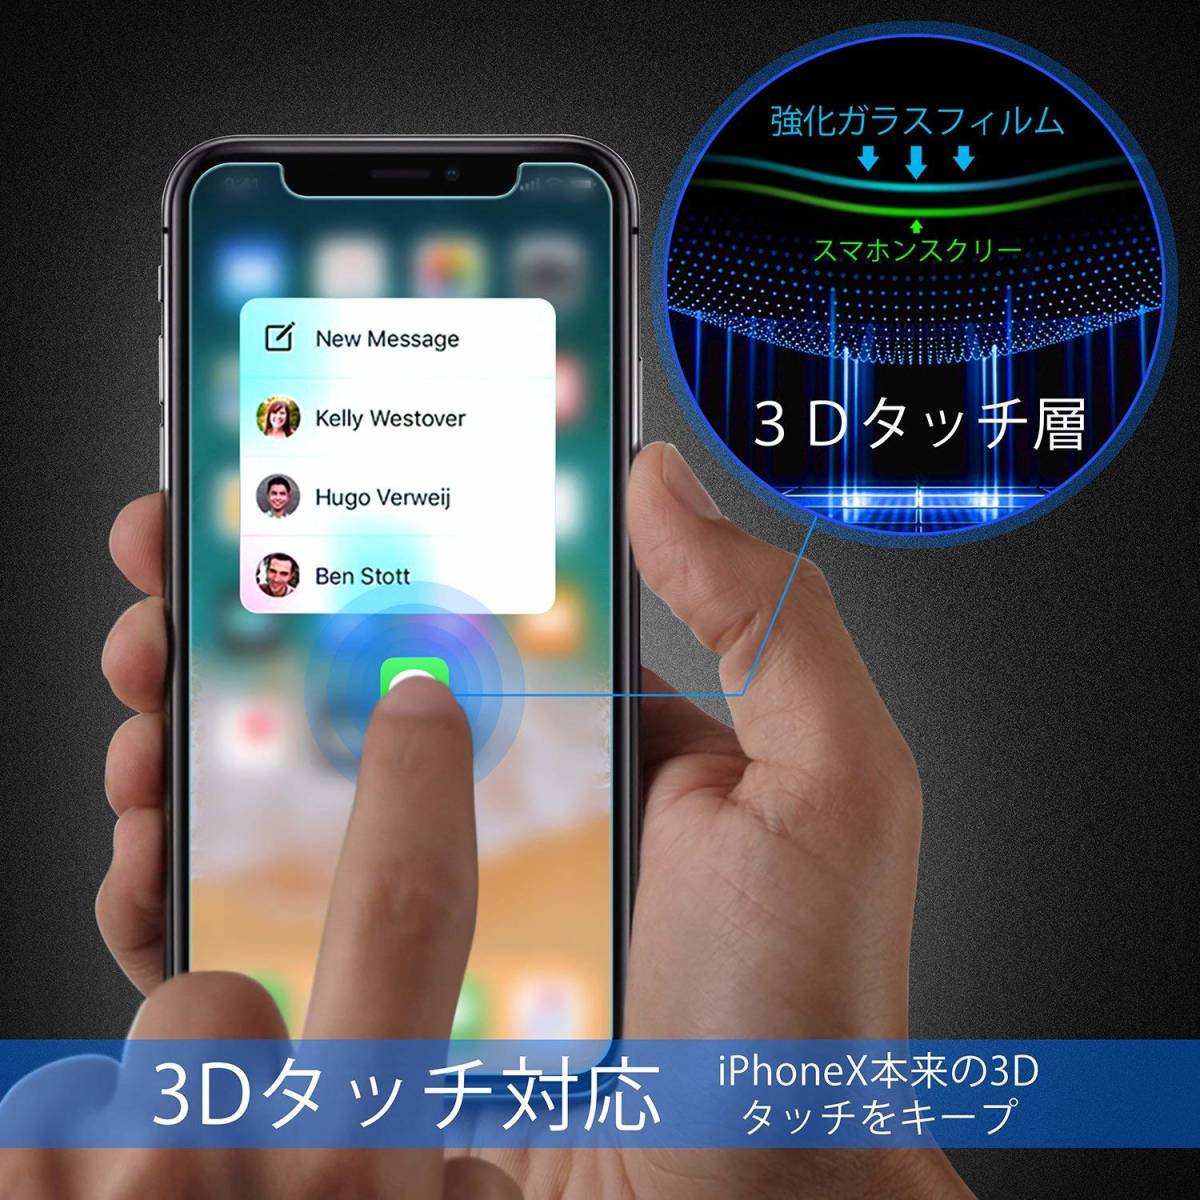 【激安超特価】iphone x フィルム【2枚入り】 ガラスフィルム 強化ガラス 高透過率 3D Touch対応 飛散防止 自動吸着 指紋防止 気泡防止 _画像6